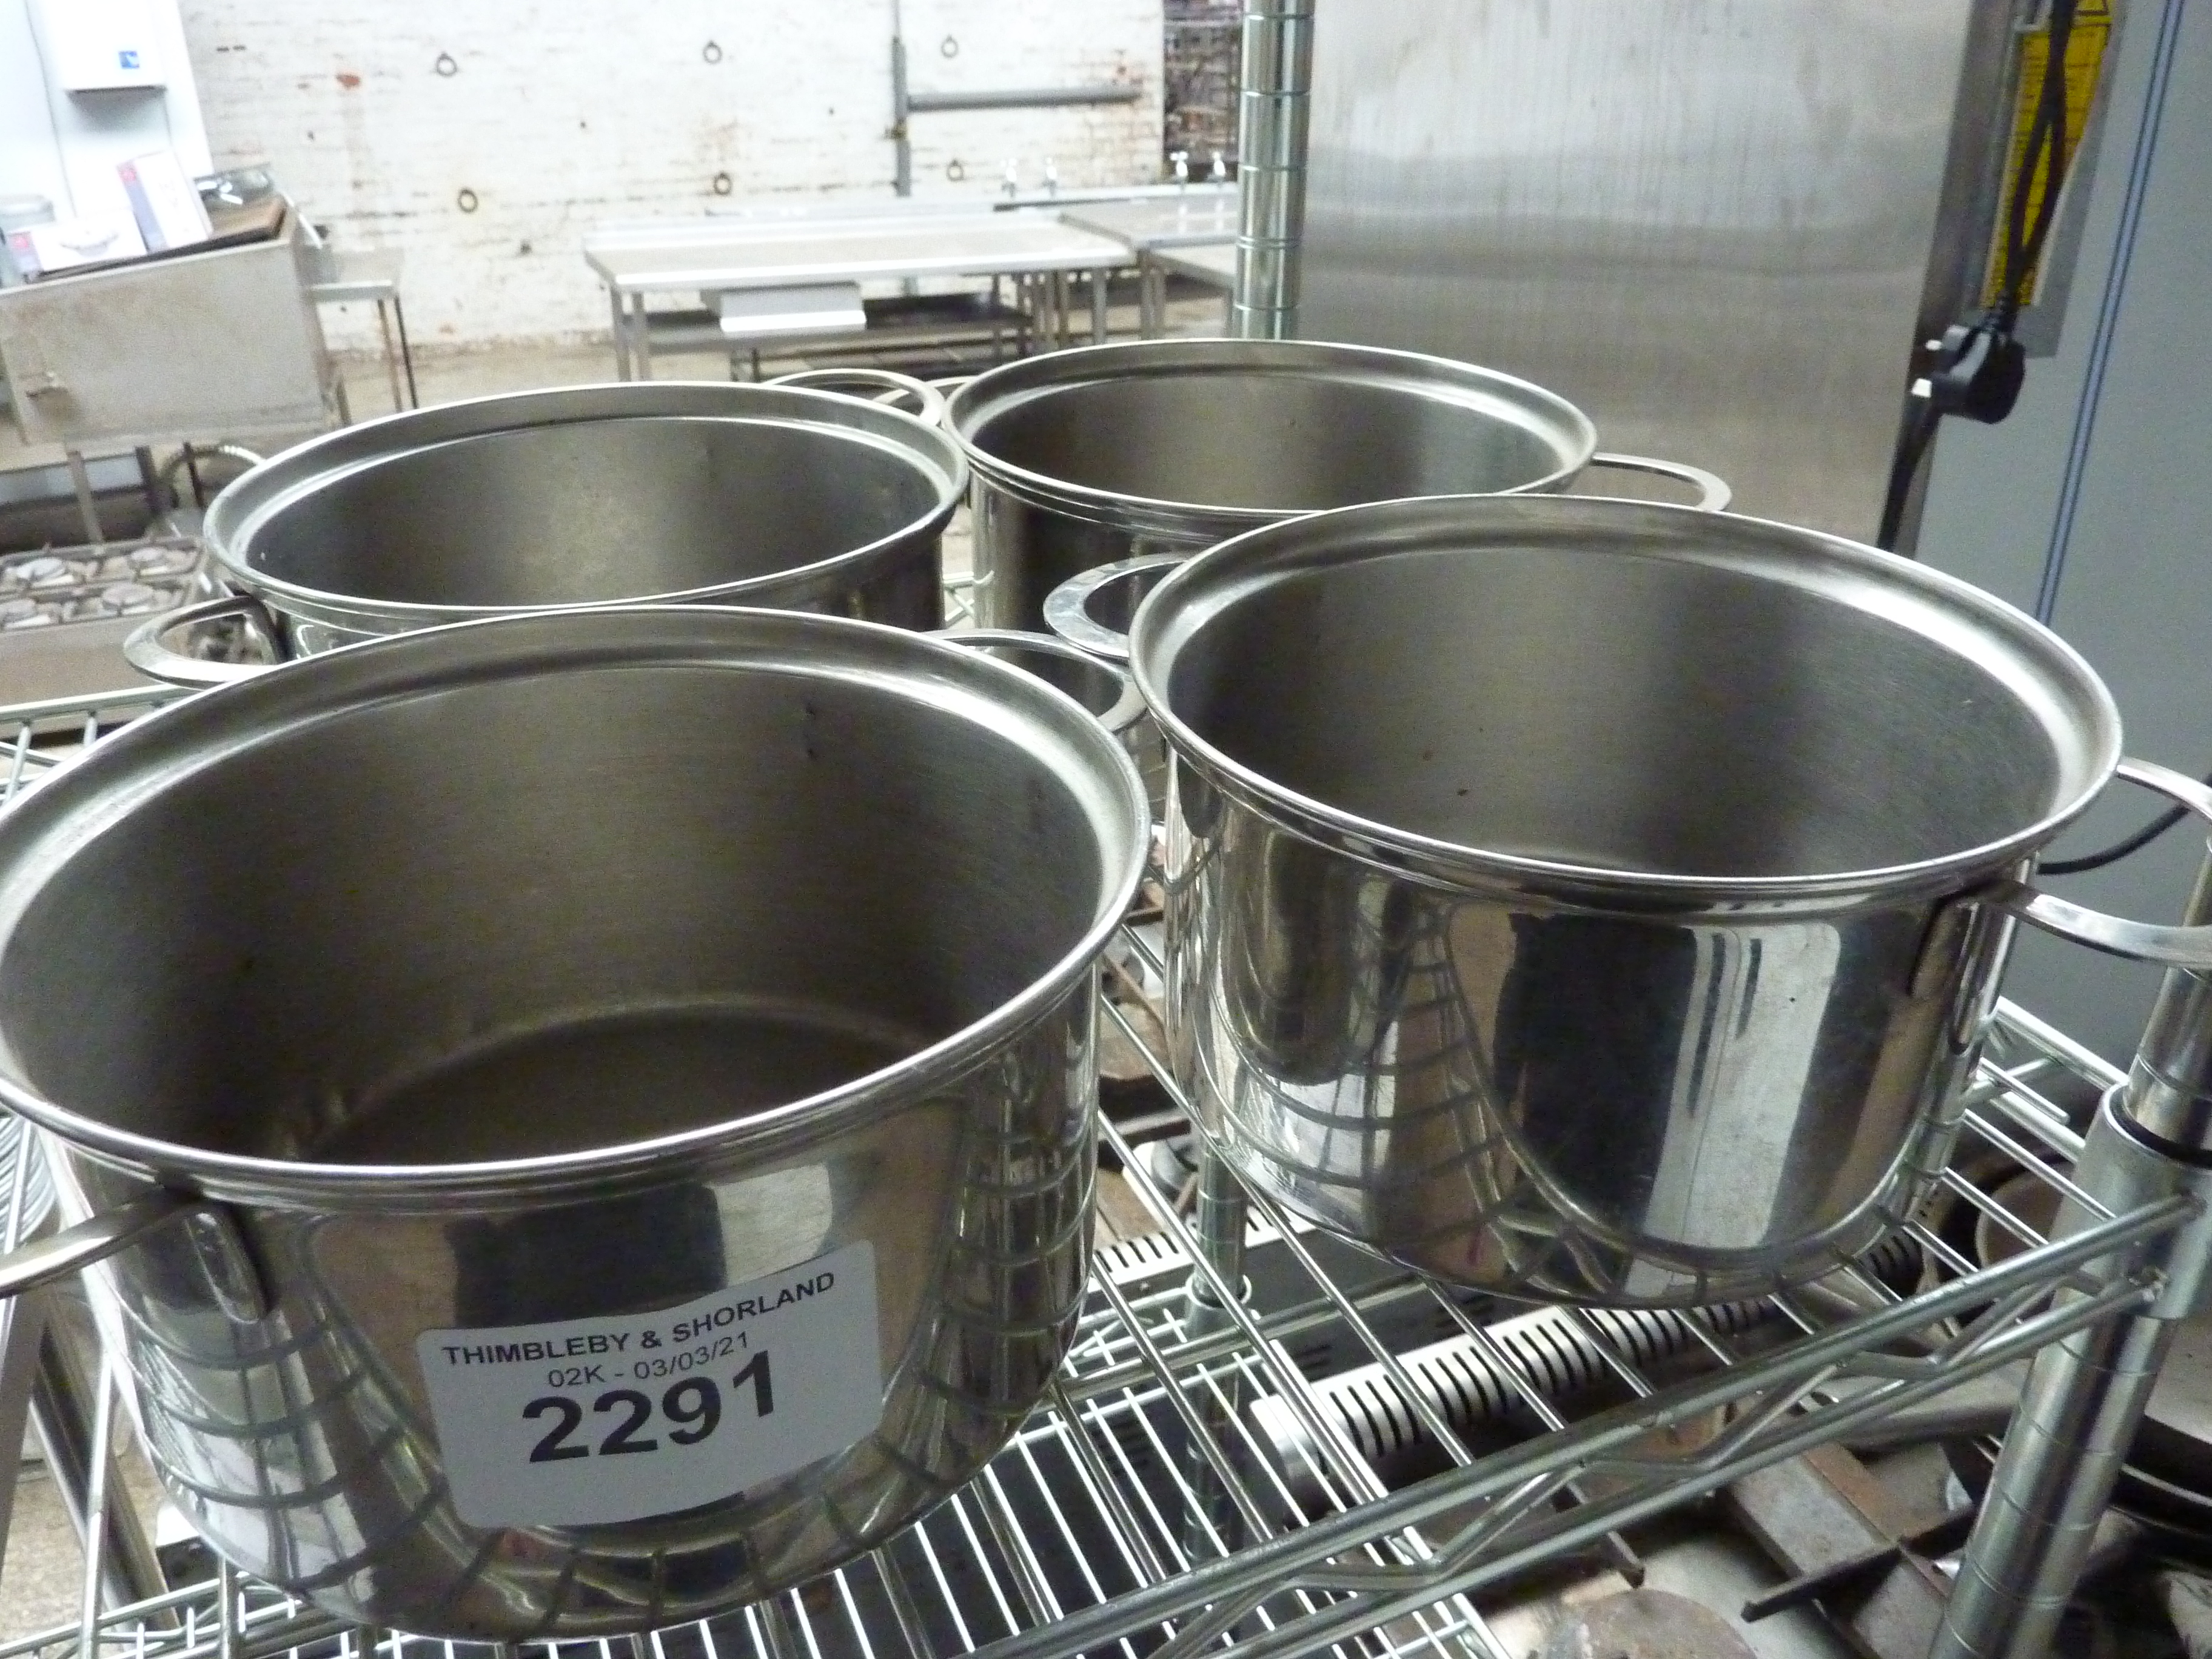 Four cooking pots